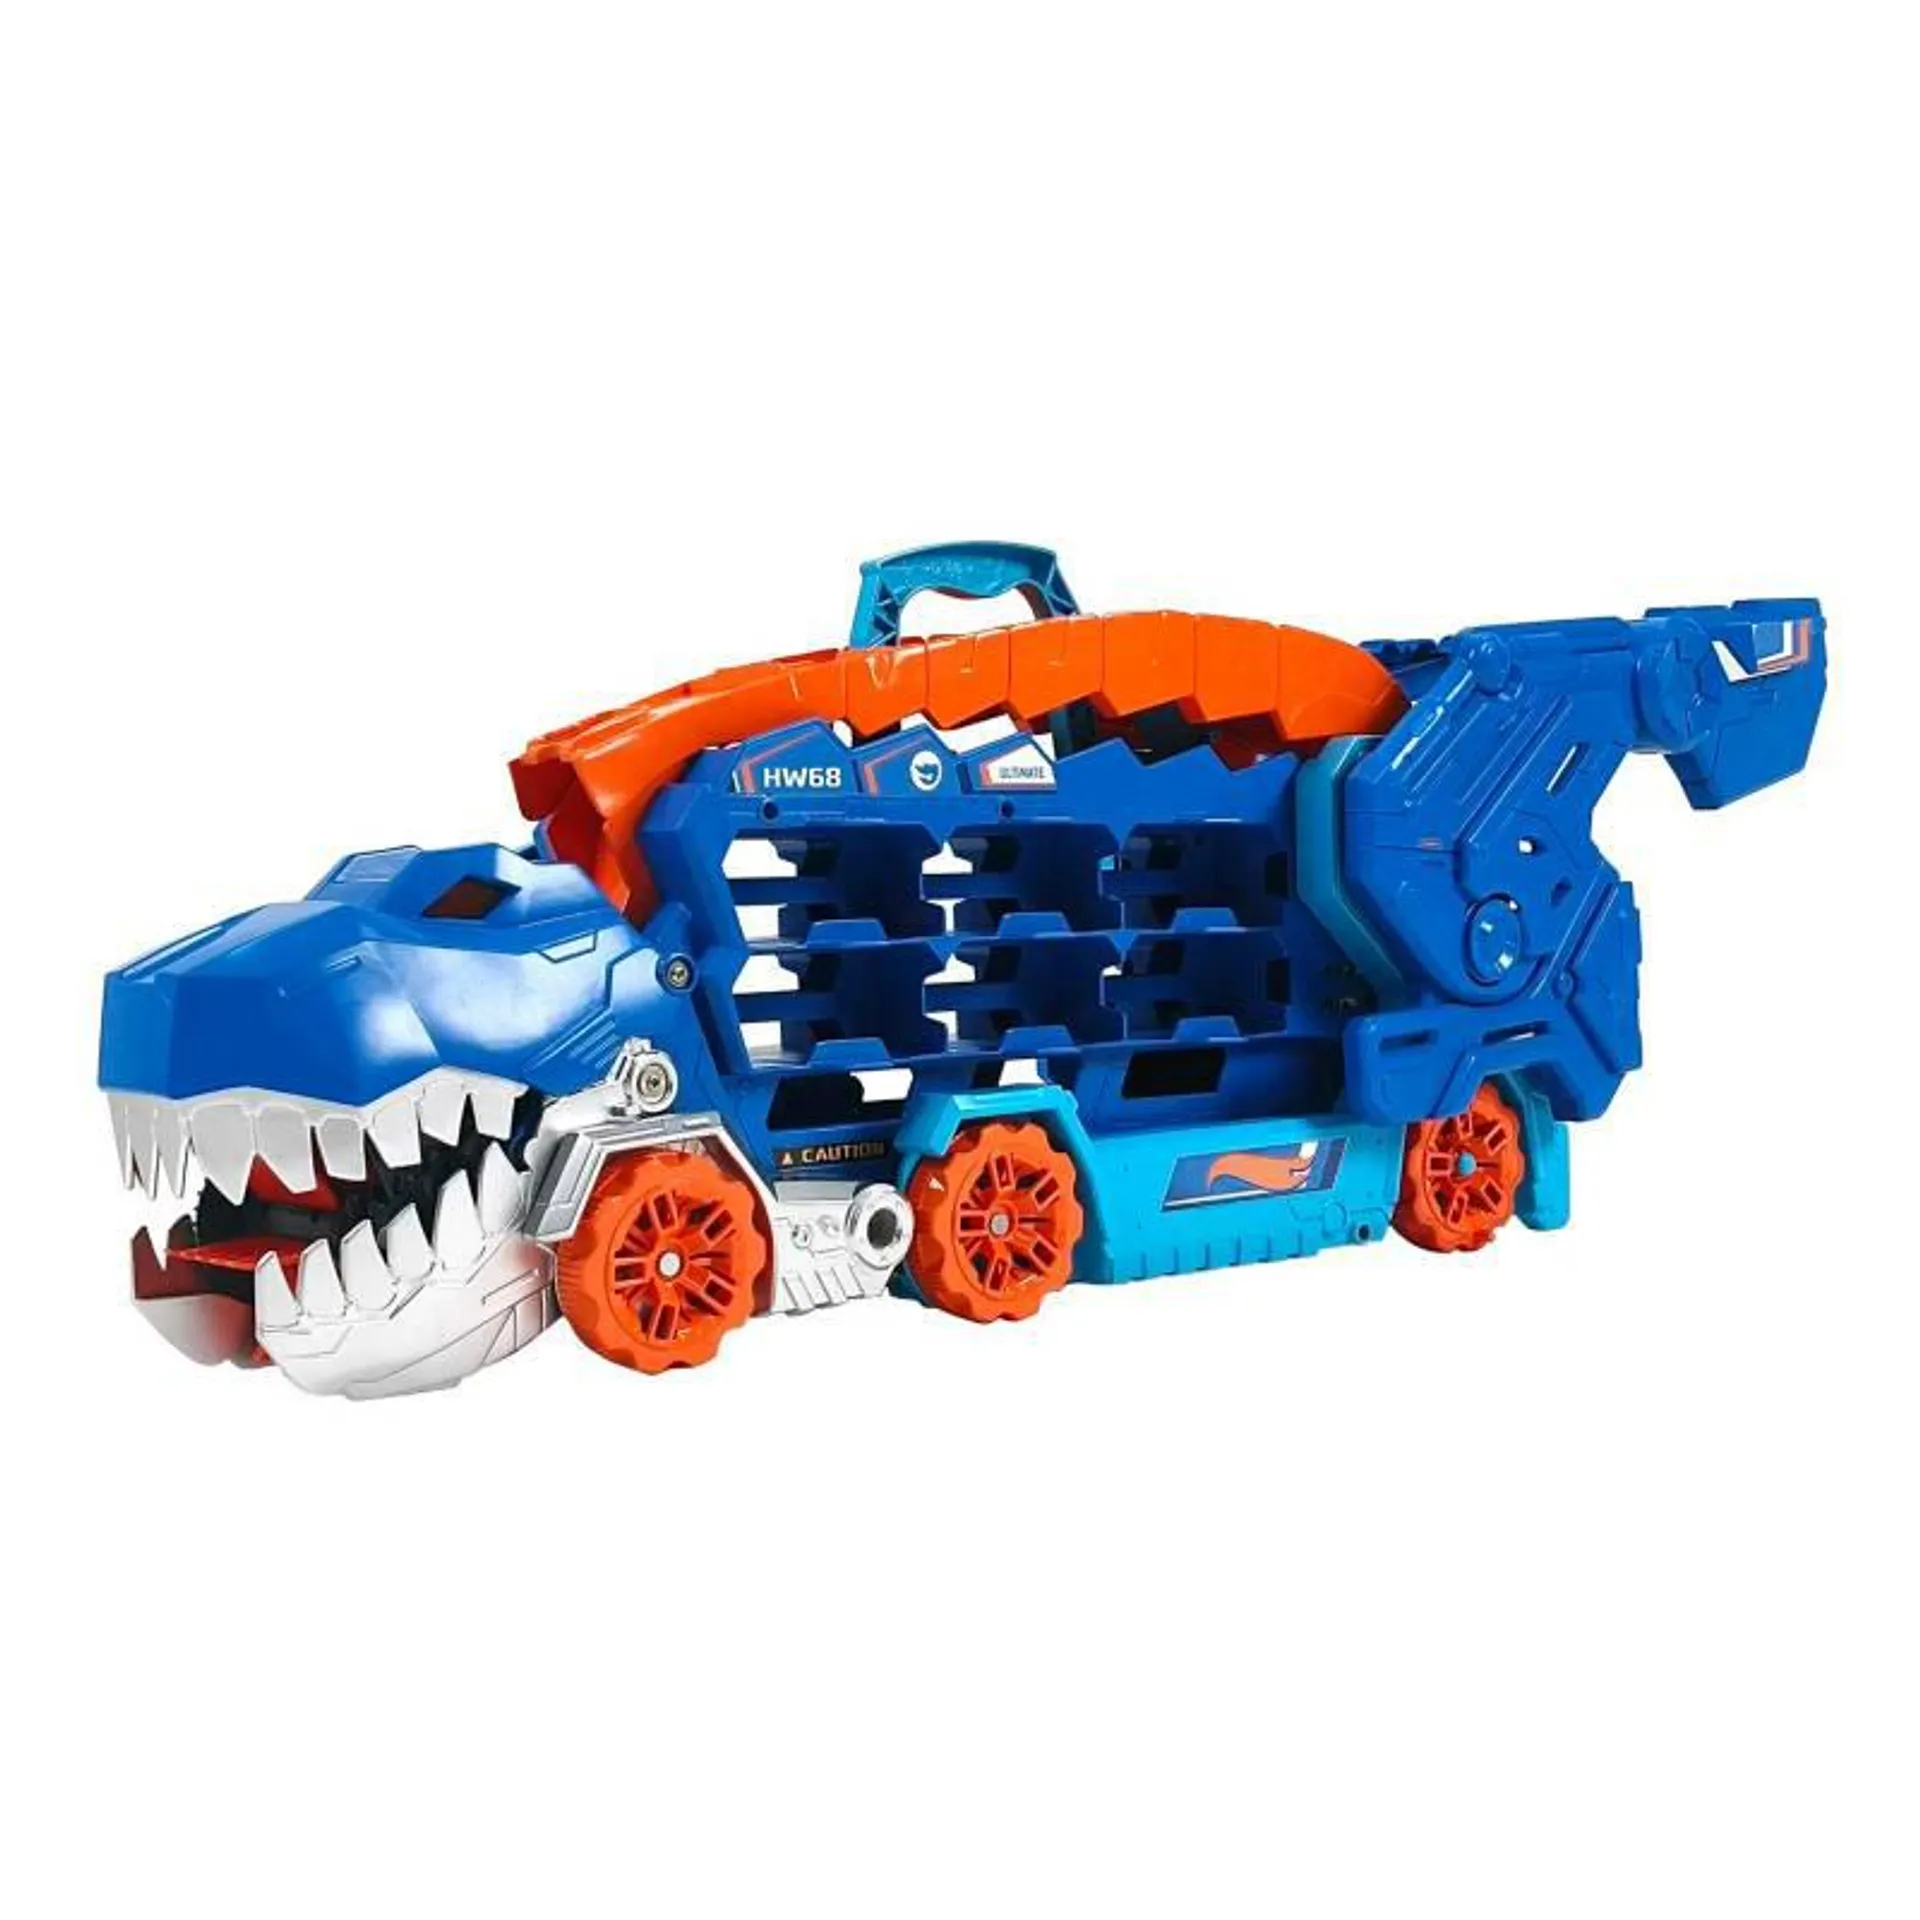 Súper Remolque T-Rex Hot wheels, para niños a partir de los 4 años